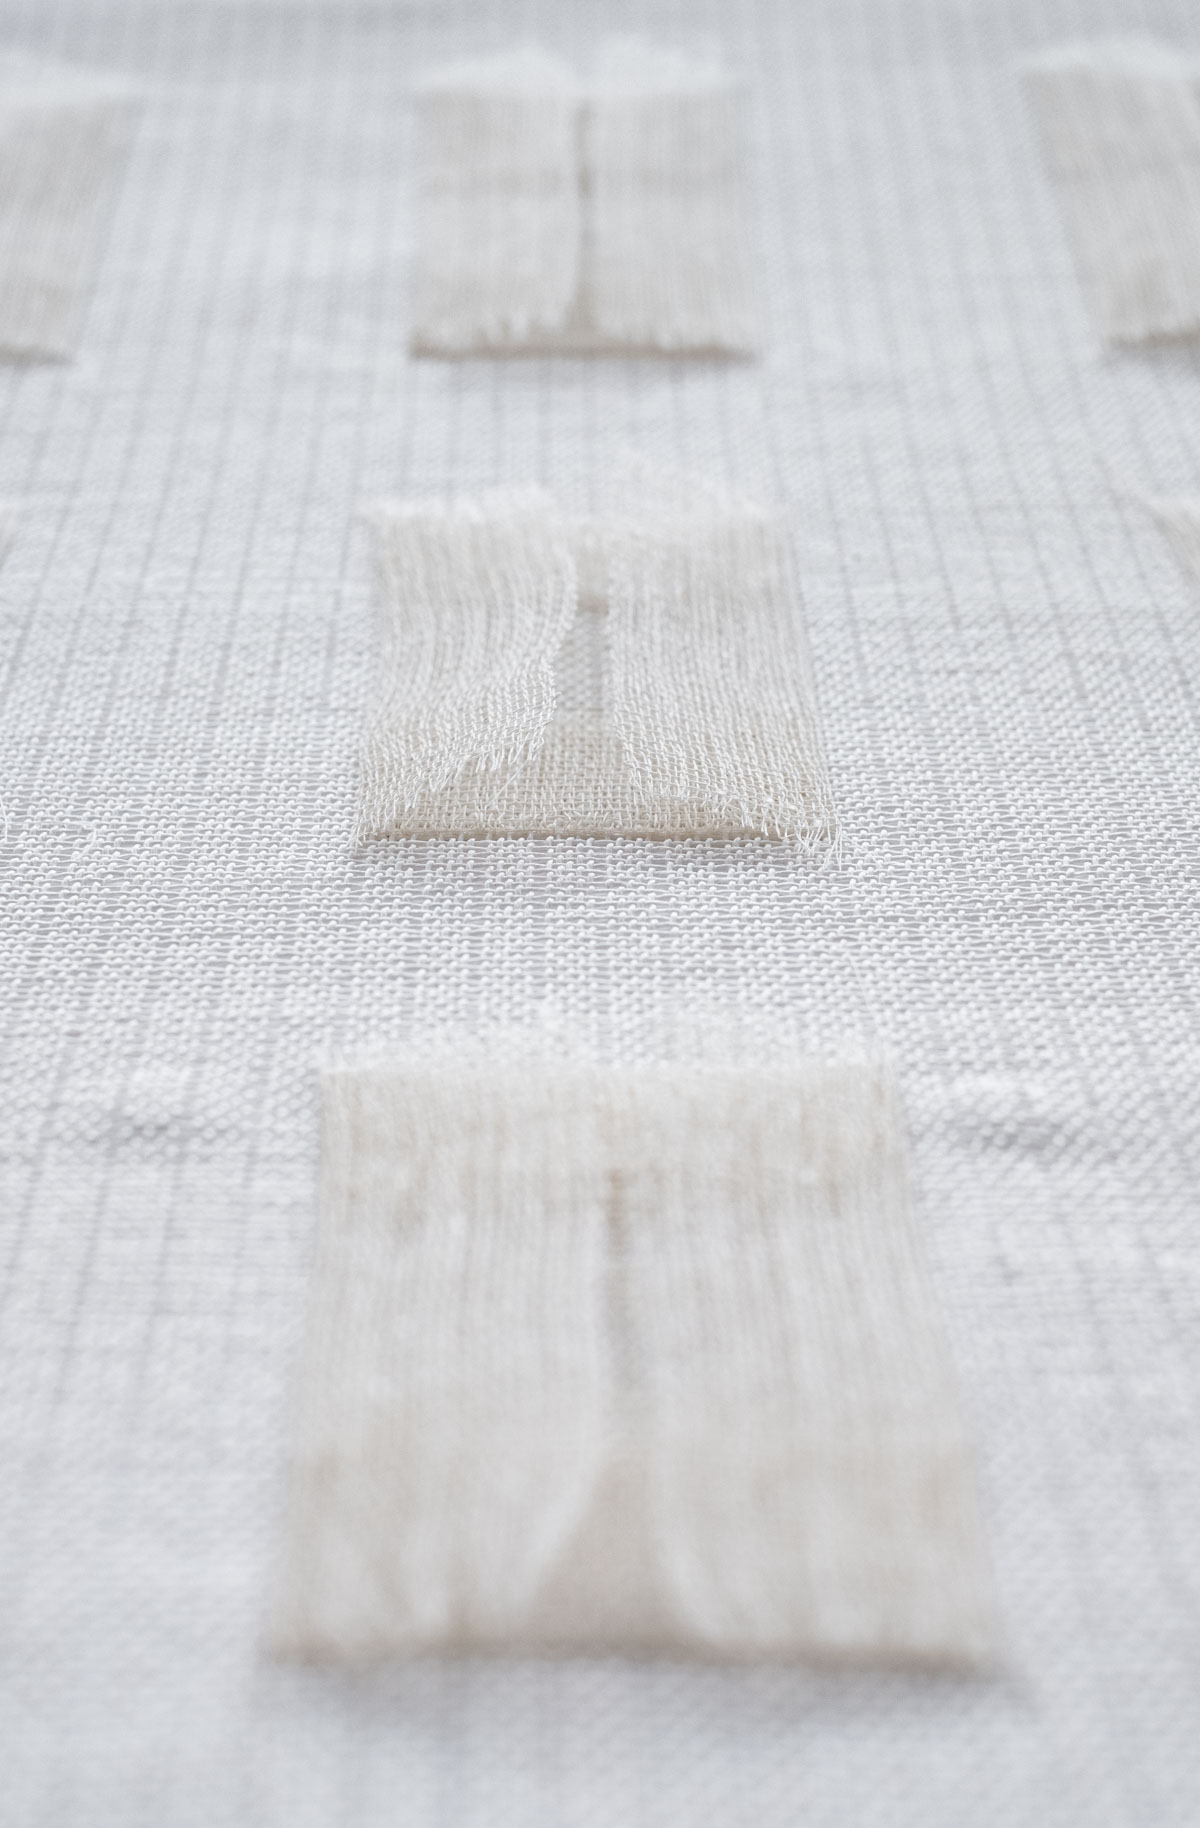 Nove Finestre In Piega (2021) 43x 28 cm Japanese paper yarn